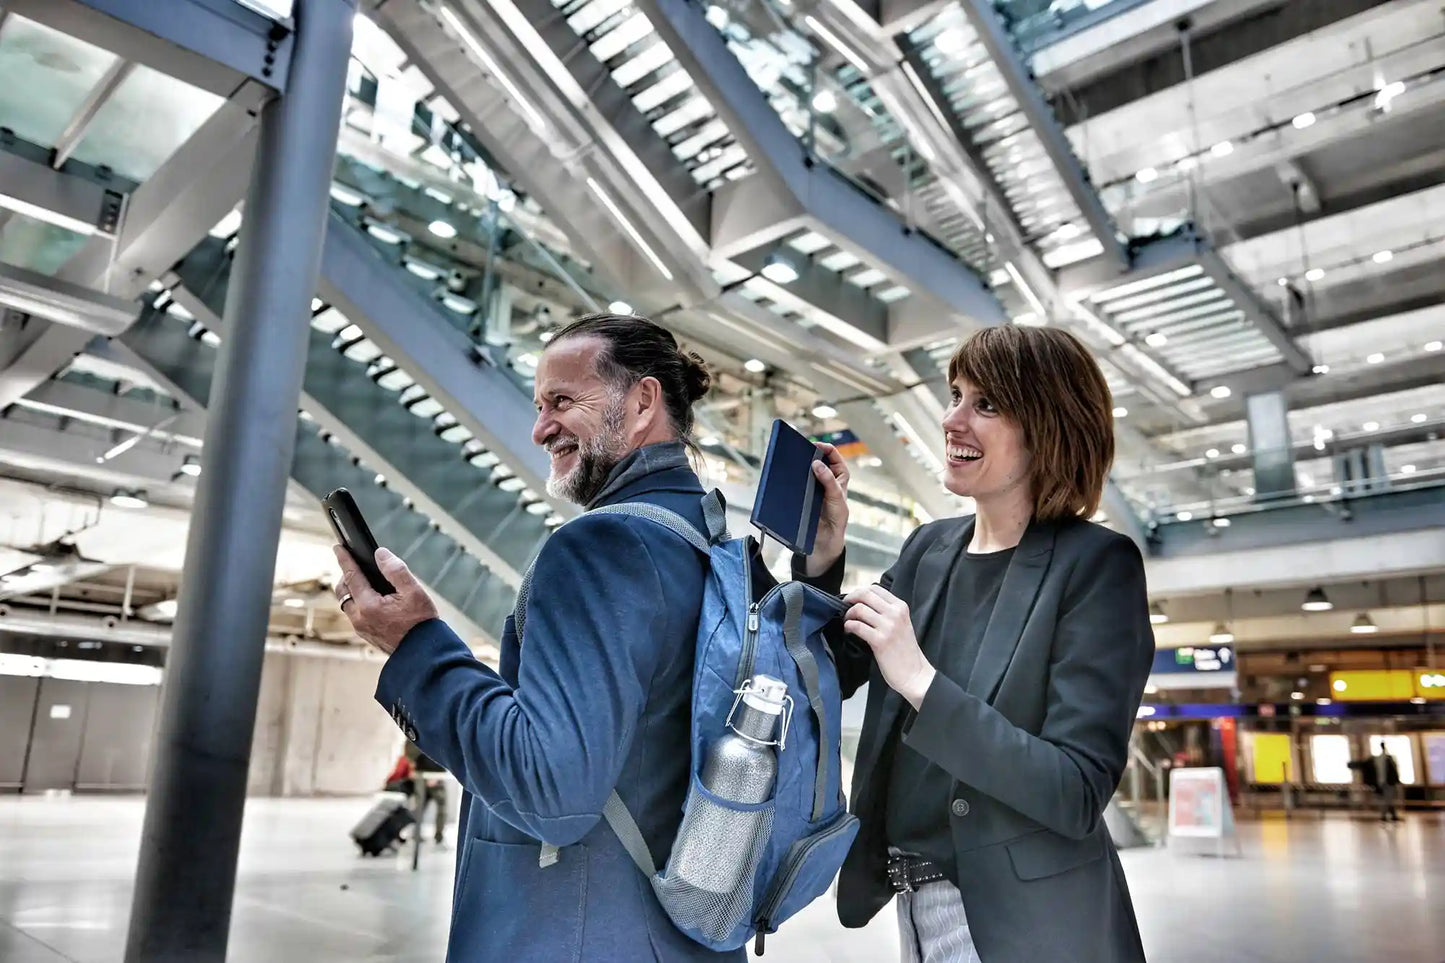 En mann og en dame på flyplassen der mannen har på seg en blå sammenleggbar ryggsekk